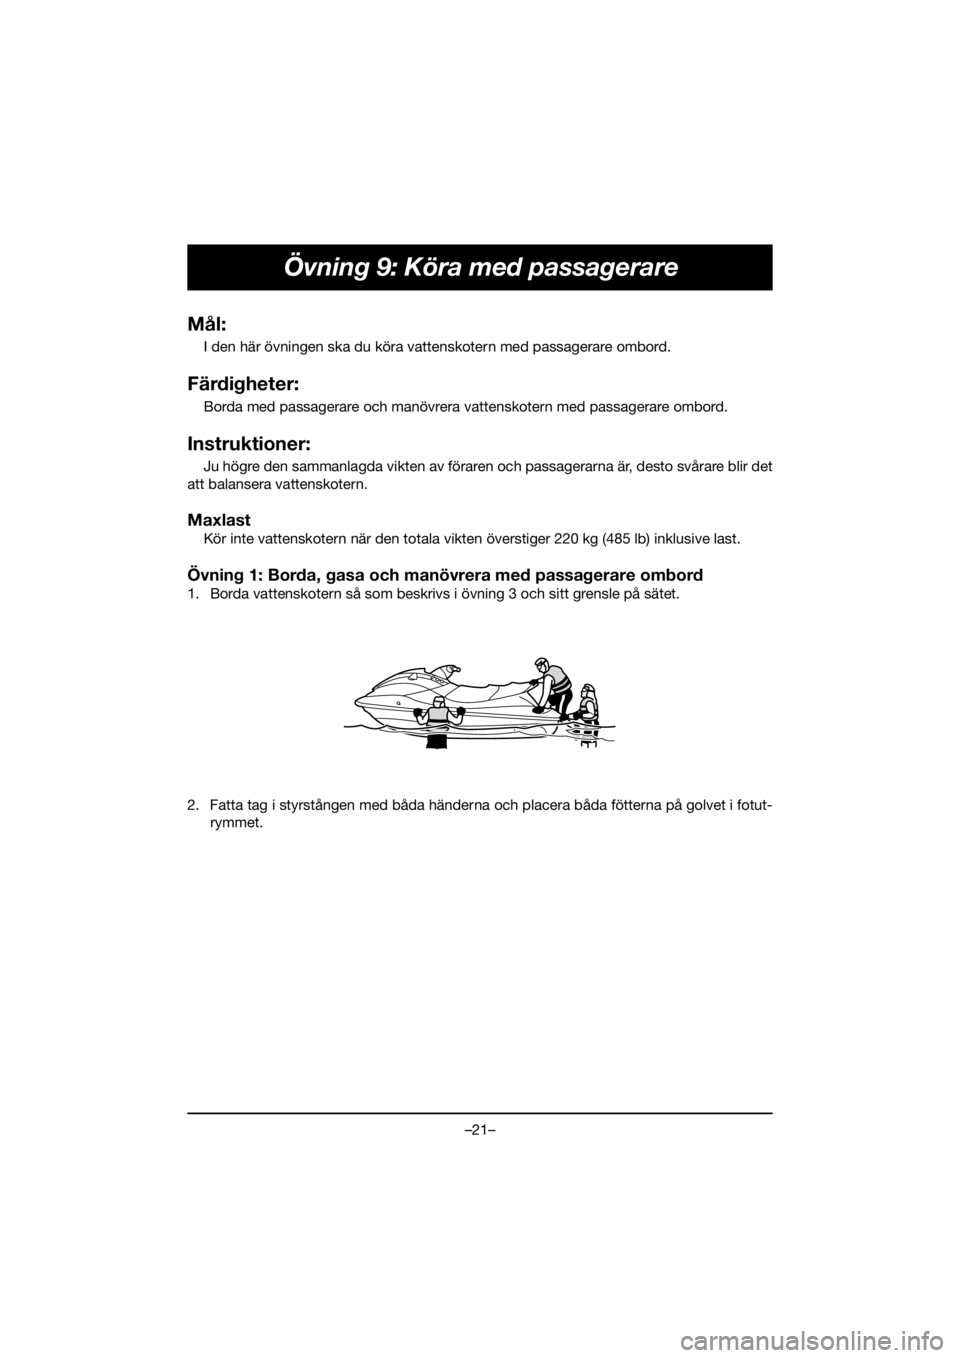 YAMAHA EX SPORT 2020  Manuale de Empleo (in Spanish) –21–
Övning 9: Köra med passagerare
Mål:
I den här övningen ska du köra vattenskotern med passagerare ombord.
Färdigheter:
Borda med passagerare och manövrera vattenskotern med passagerare